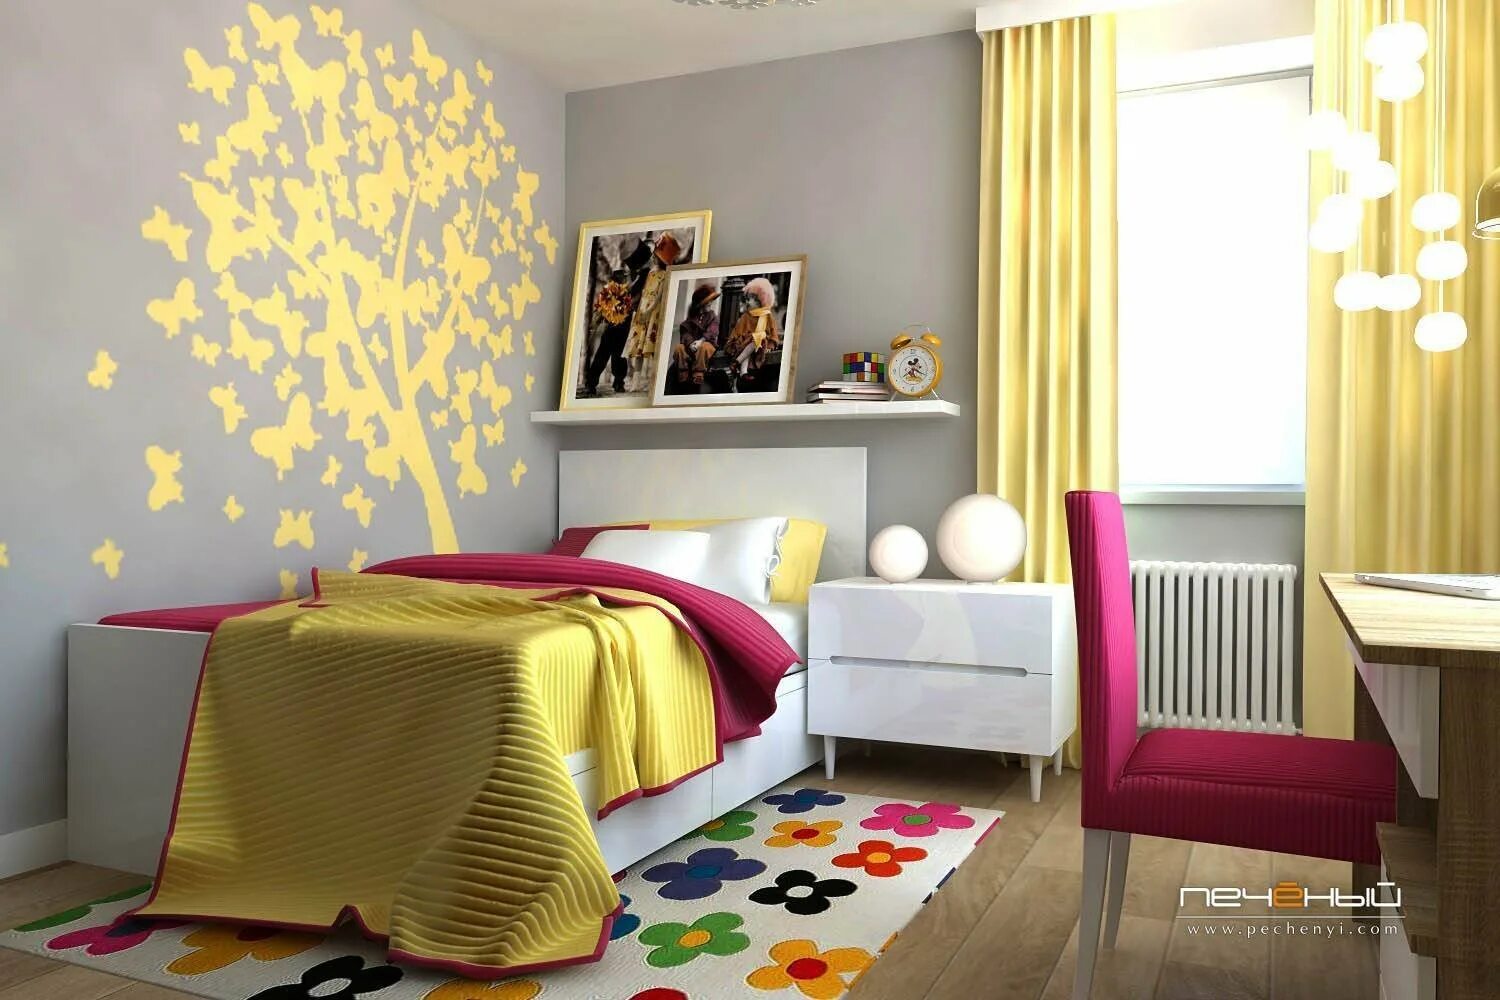 Комнату угадай. Комната в желтом цвете. Интерьер детской. Комната для девочки подростка в желтом цвете. Детская с желтыми стенами.